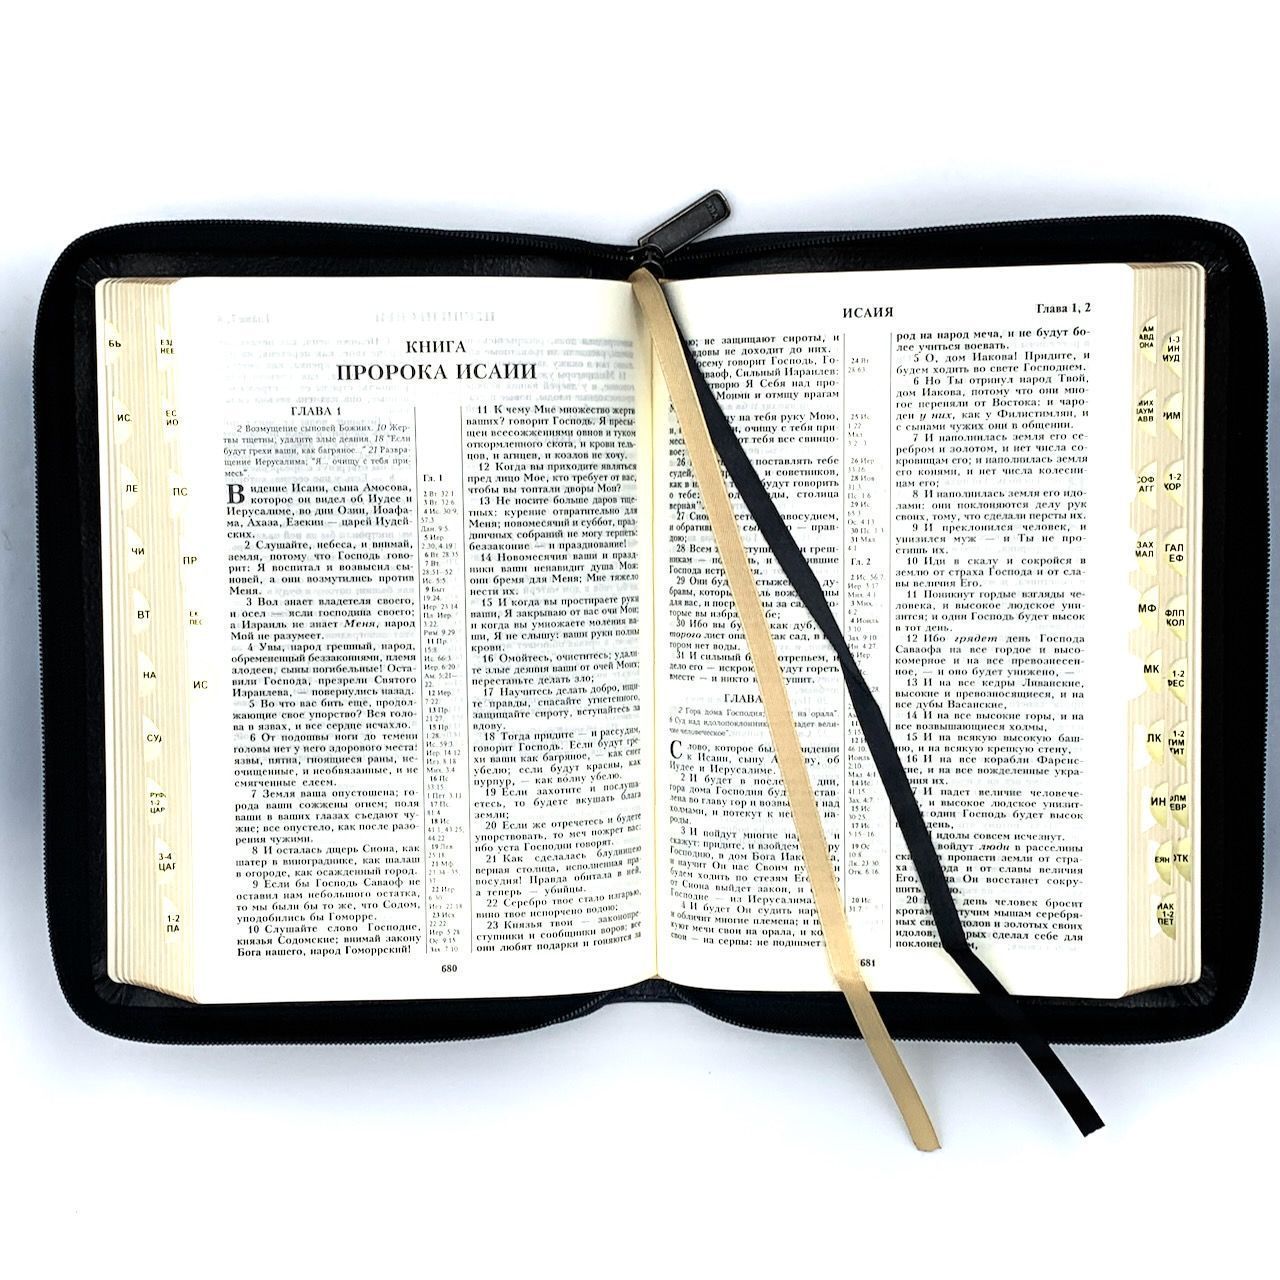 Библия 055 zti код 11549, кожаный переплет на молнии с индексами, цвет черный, золотой обрез, средний формат, 145*205 мм, хороший шрифт